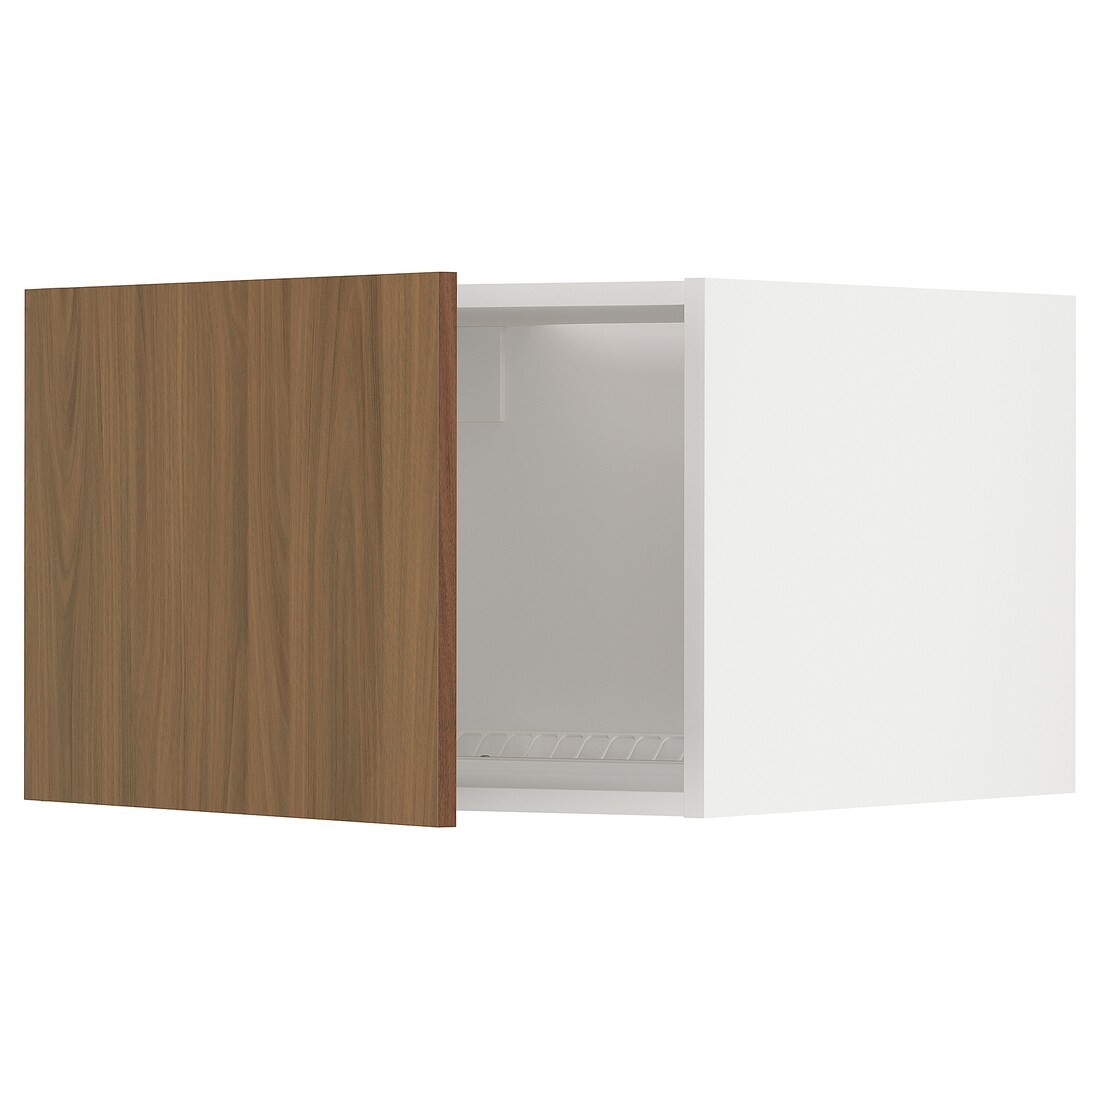 METOD Верхний шкаф для холодильника / морозильника, белый / Имитация коричневого ореха, 60x40 см